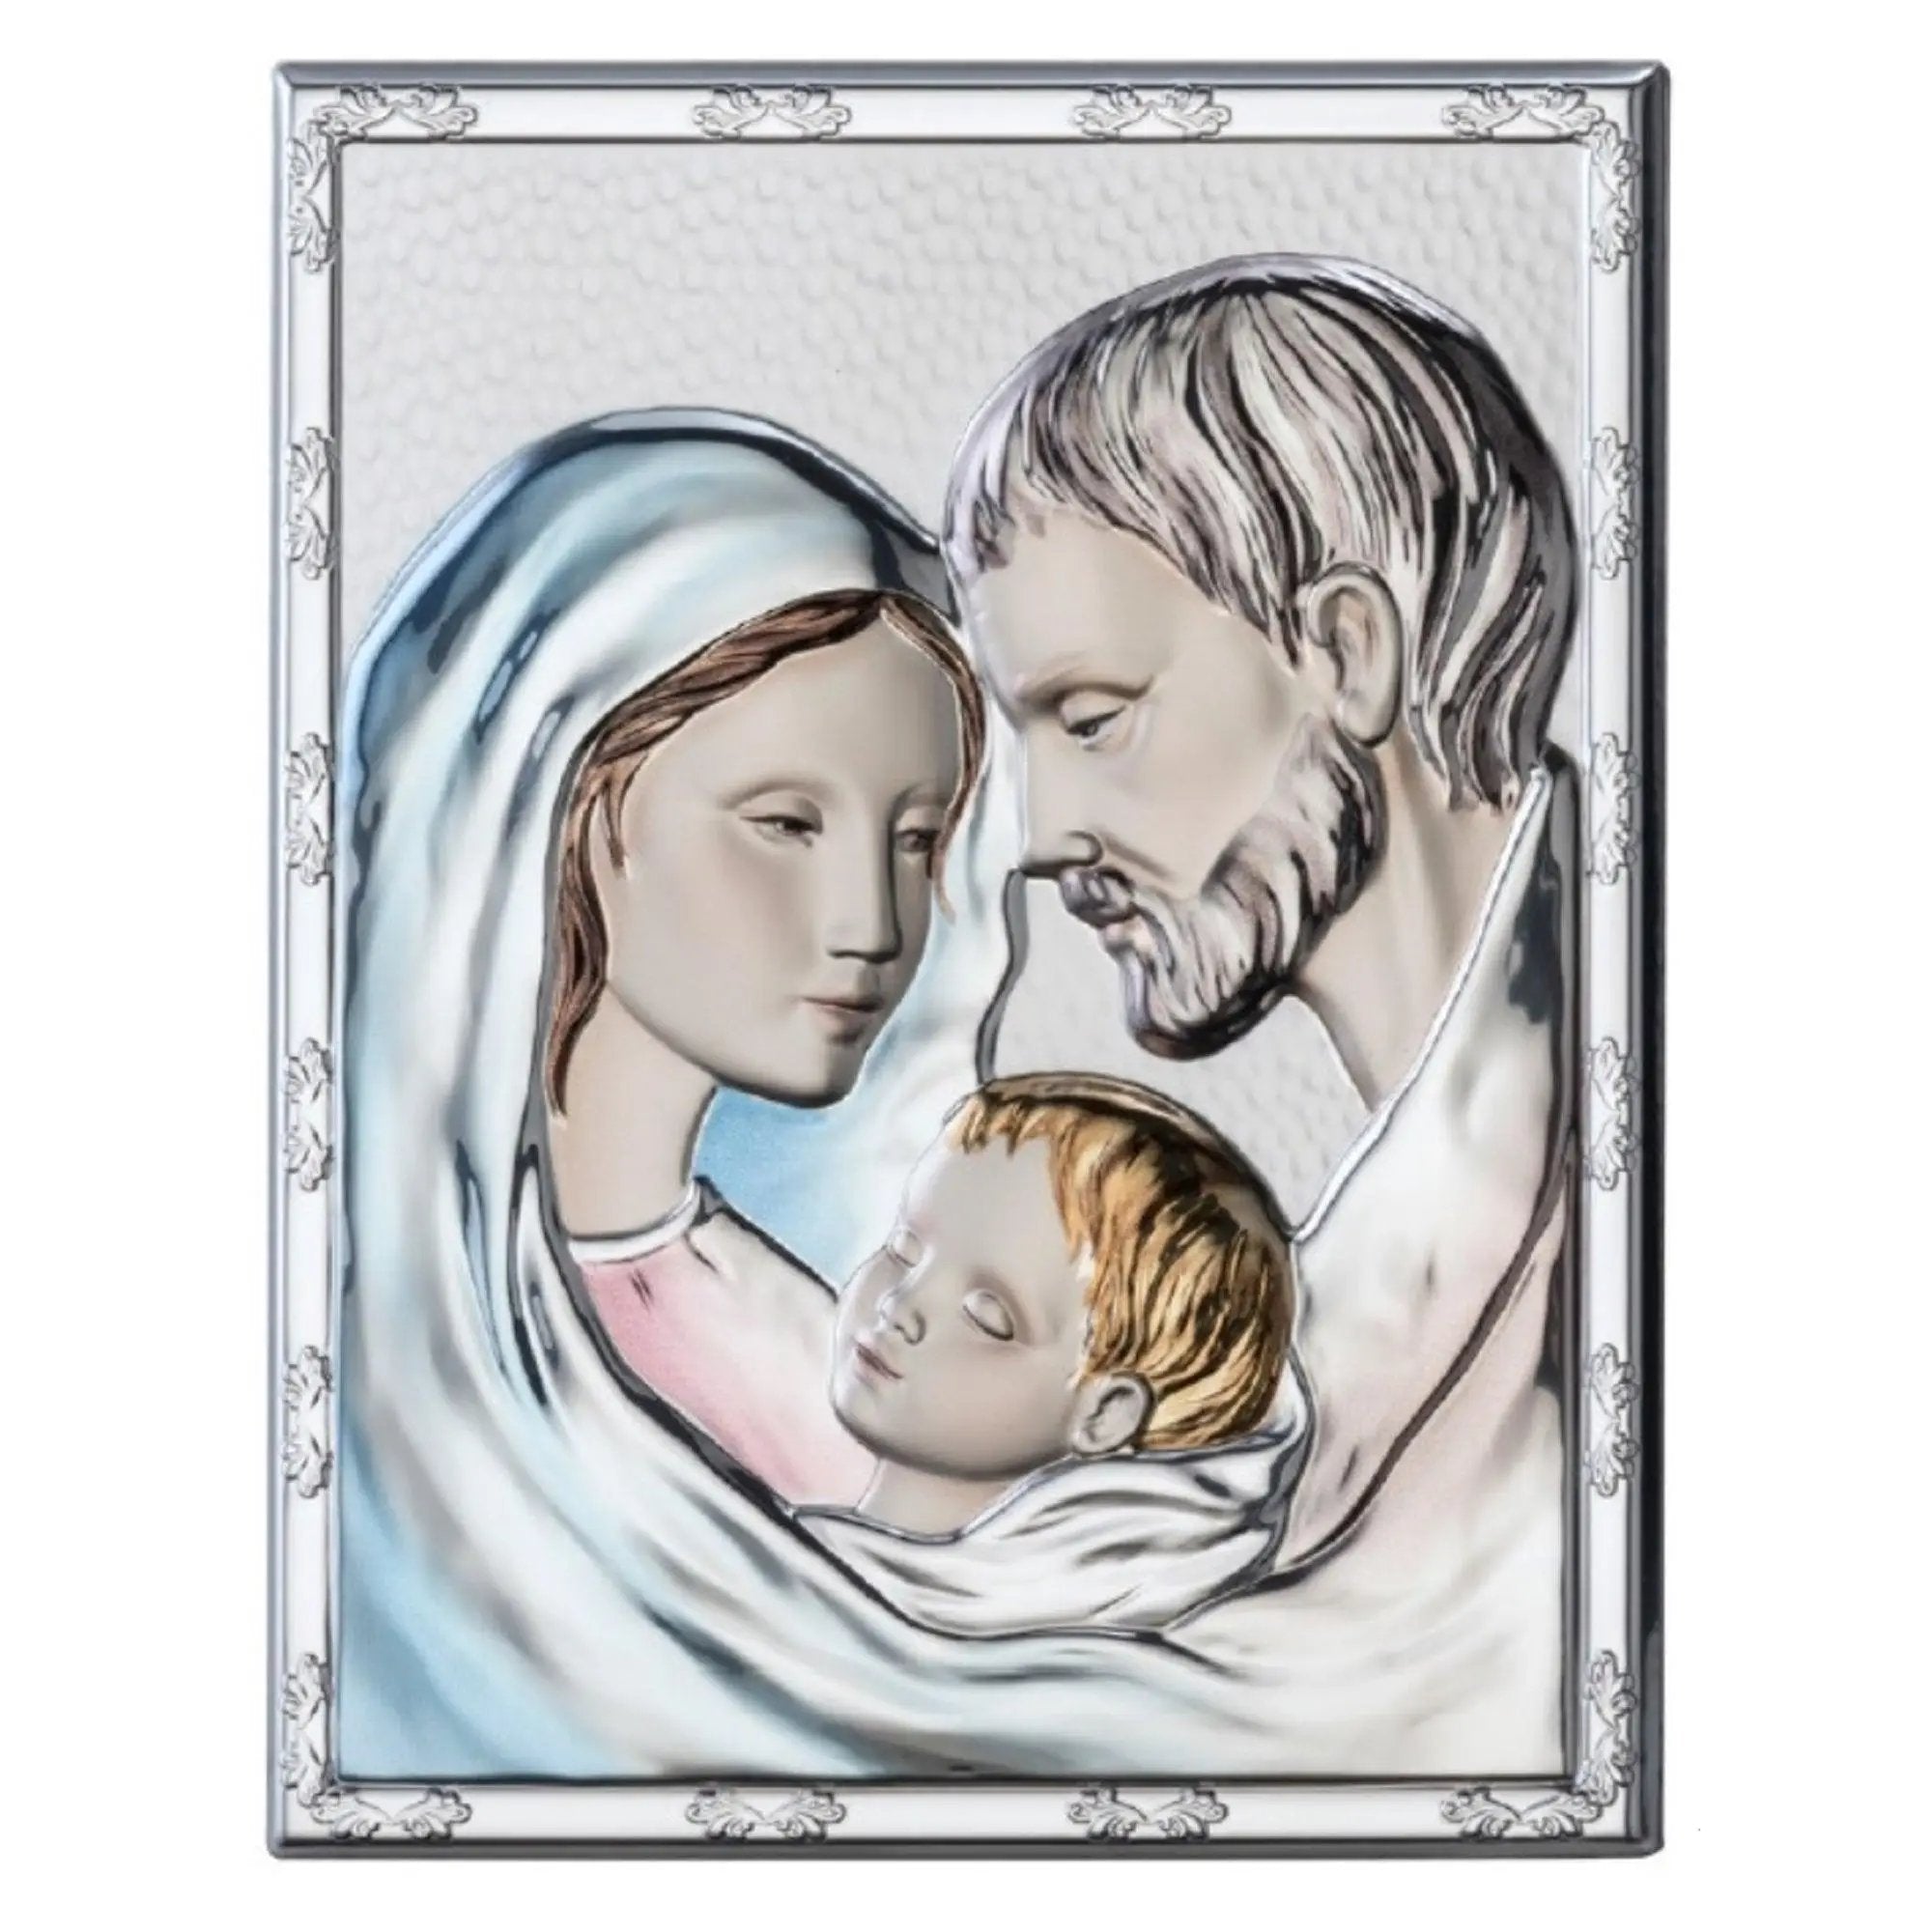 Icona Sacra Sacra Famiglia Grande Colorata con Bordo misure 20x25 cm Icone Sacre Albalu Bomboniere   